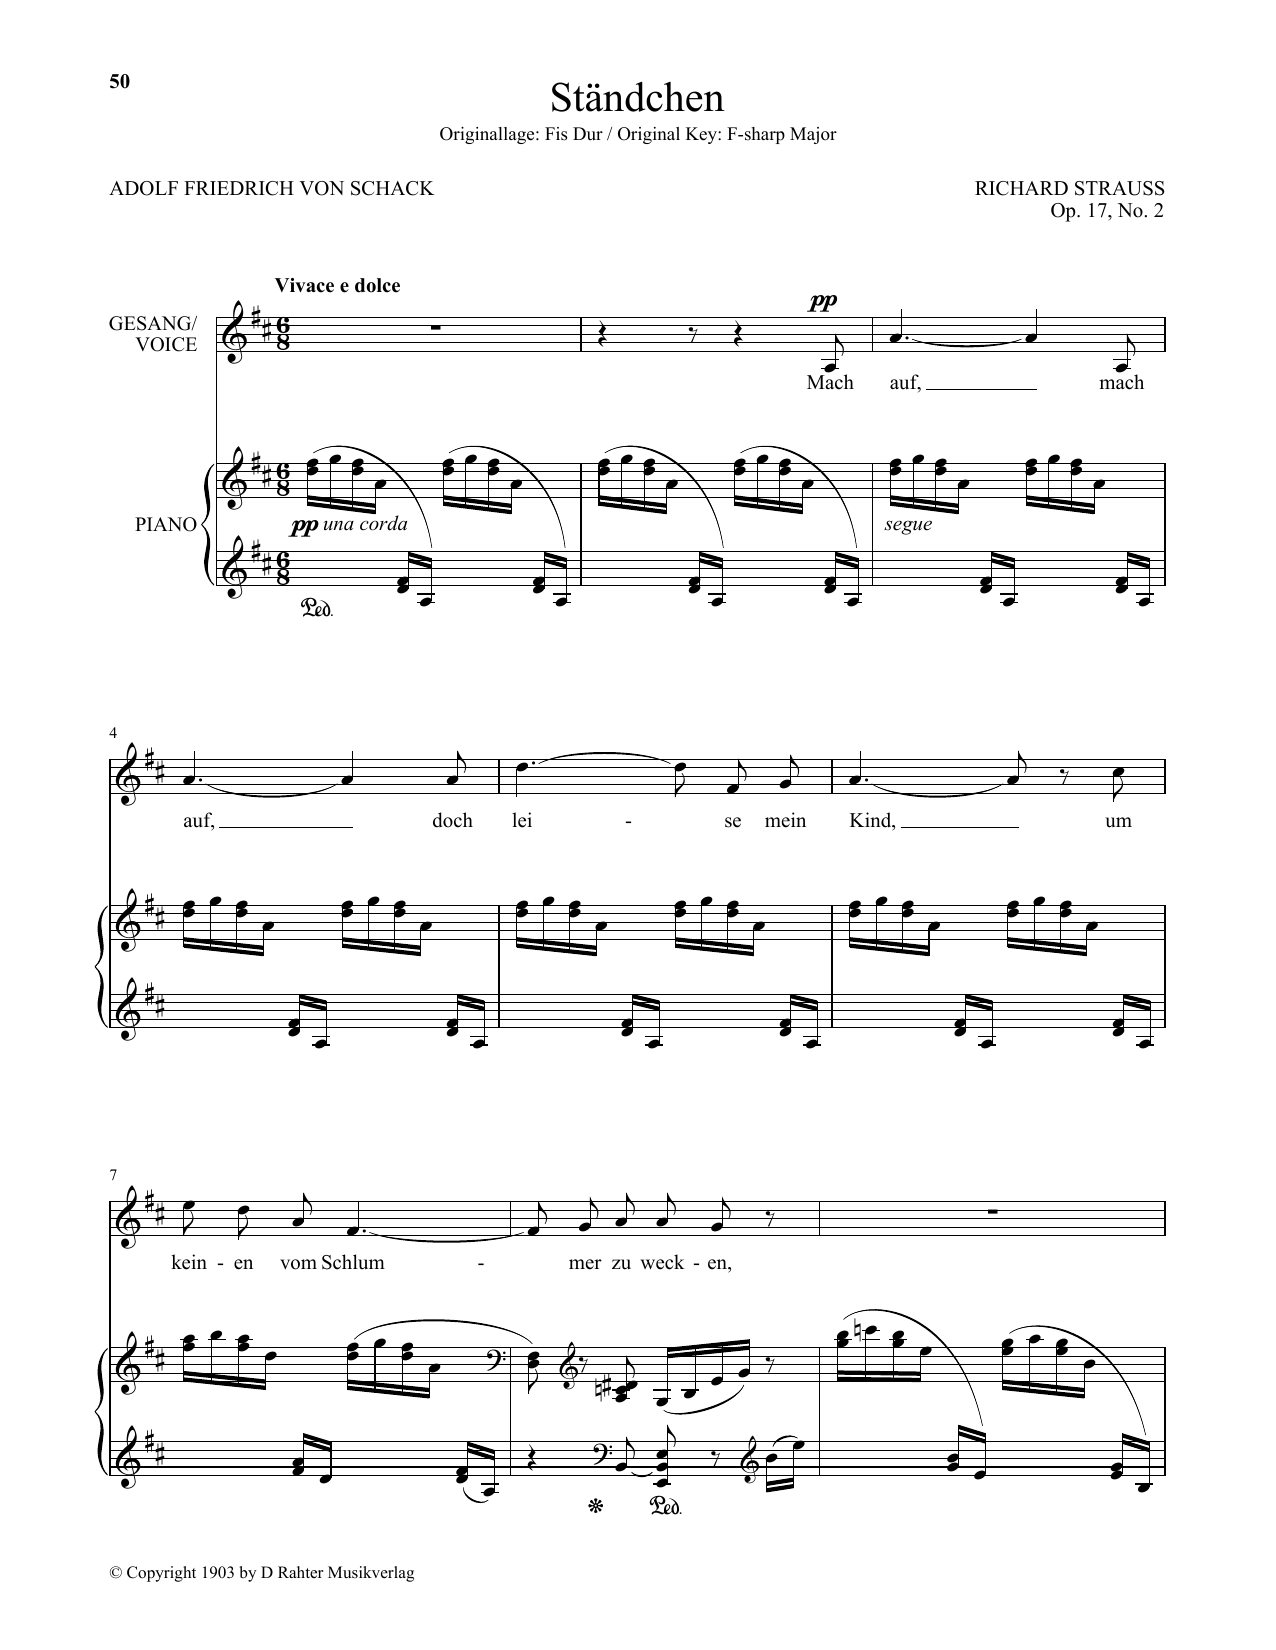 Download Richard Strauss Standchen (Low Voice) Sheet Music